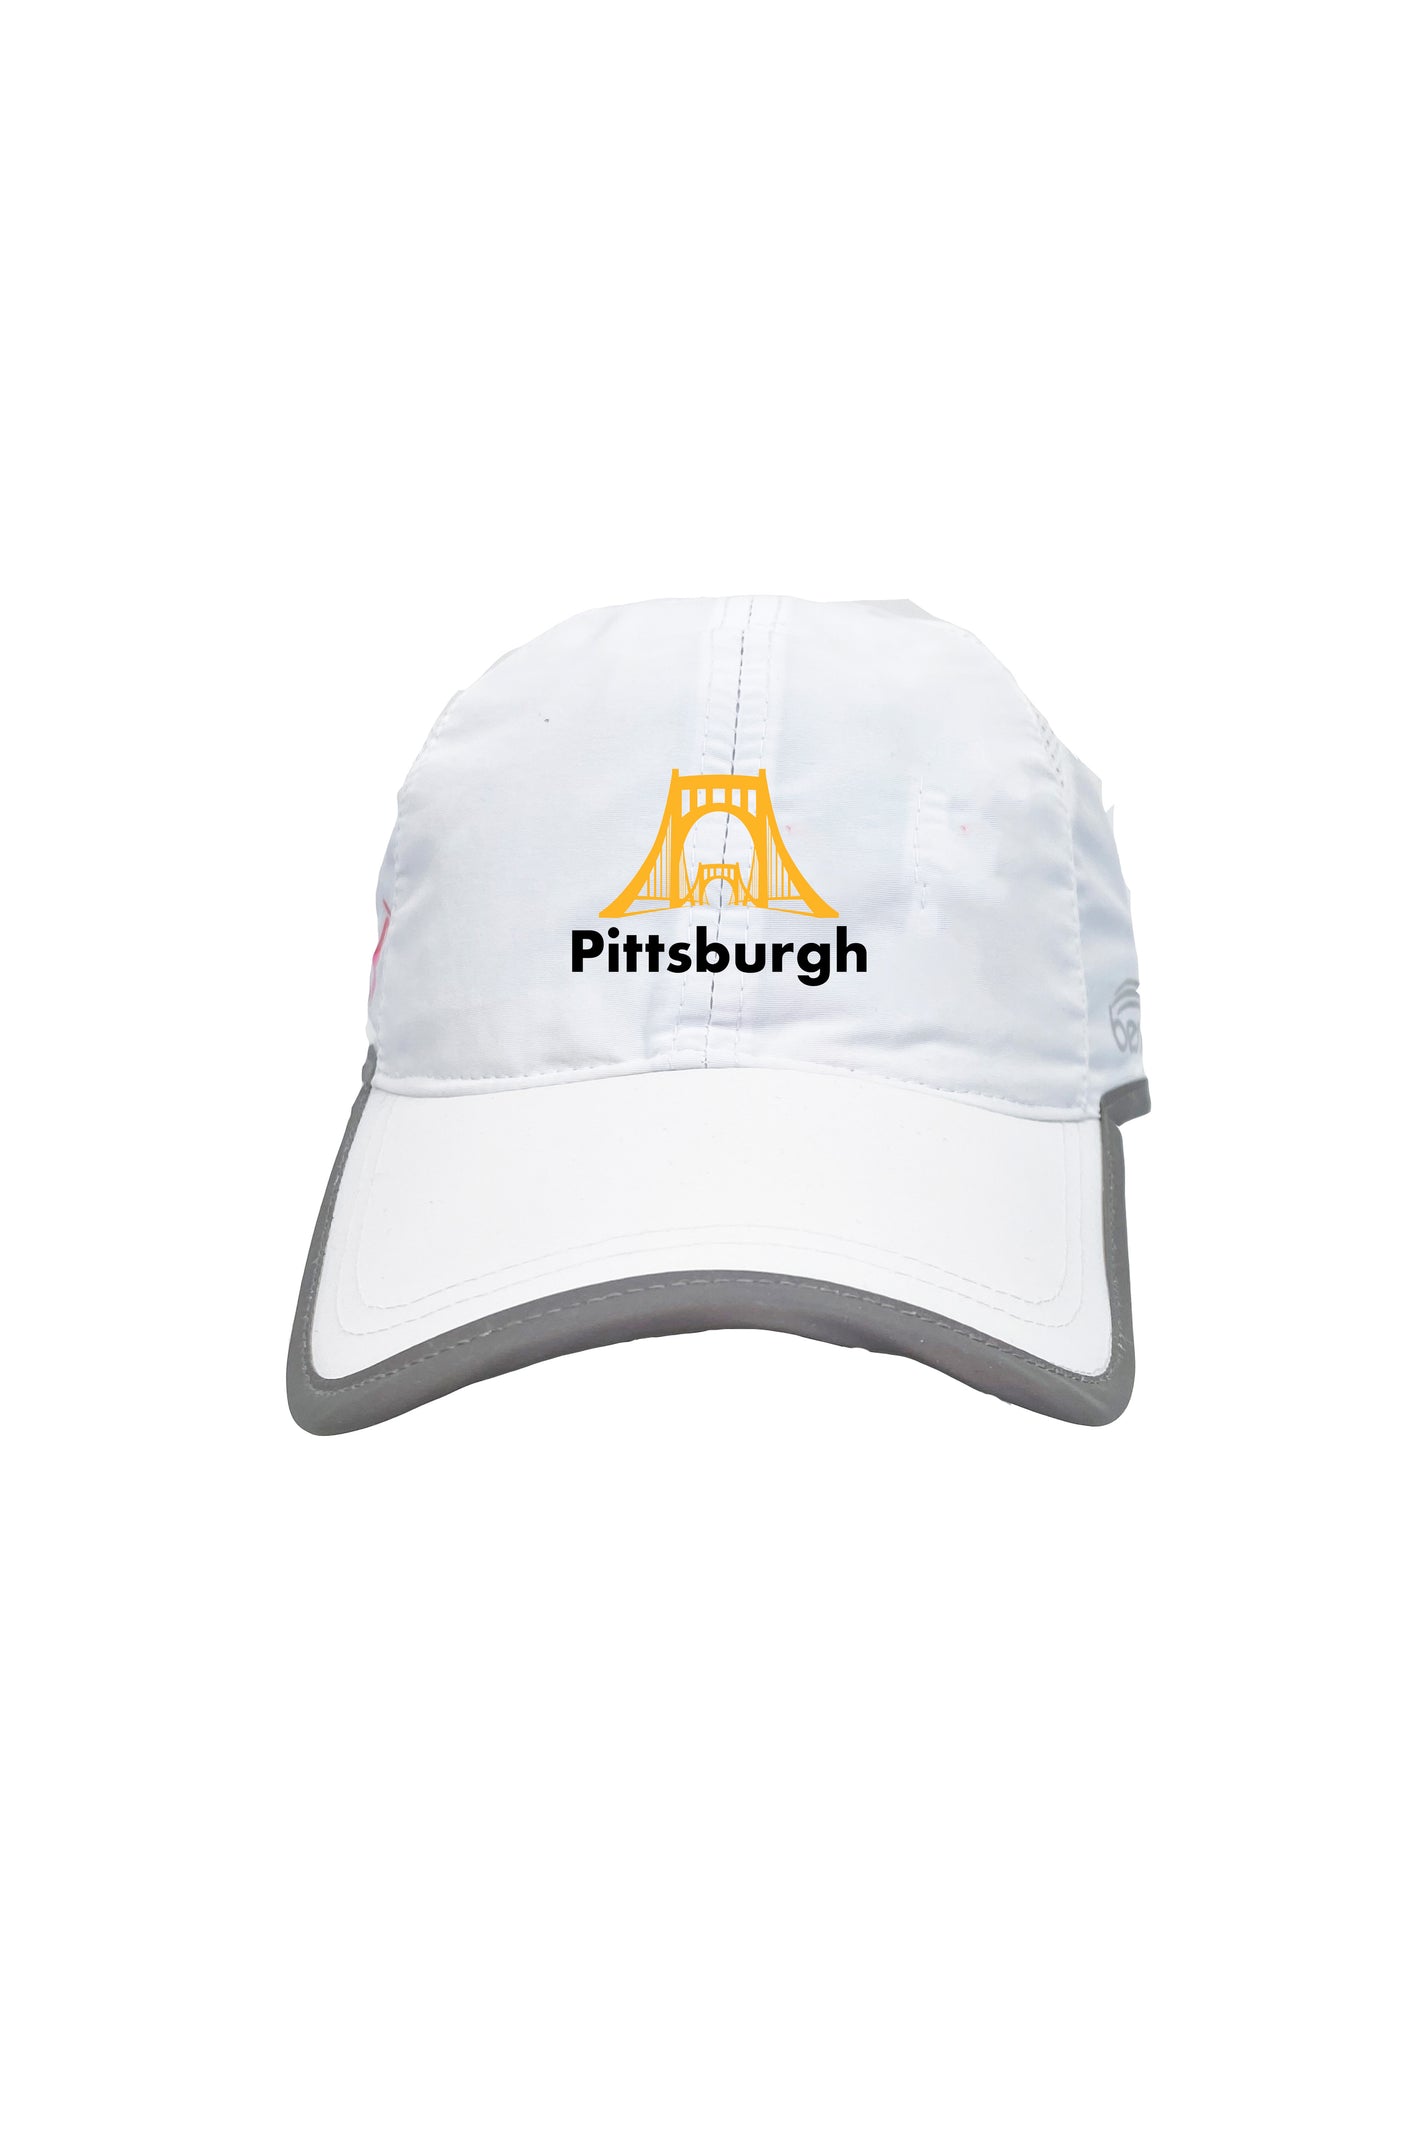 7109 - Pittsburgh Bridge Running Hat - White